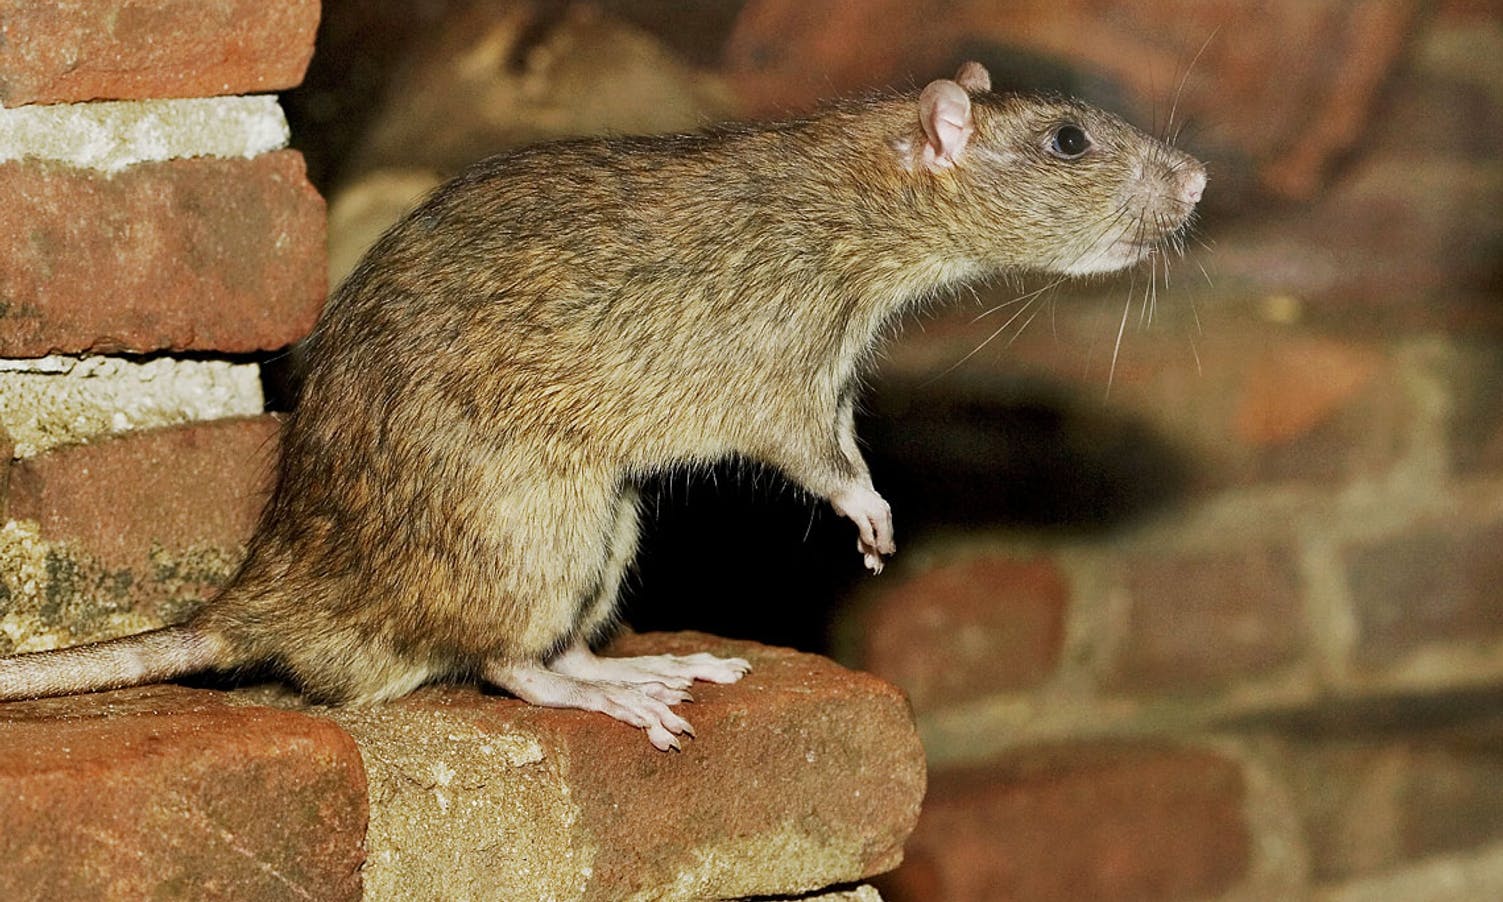 20 hus i Os skadet av rotter